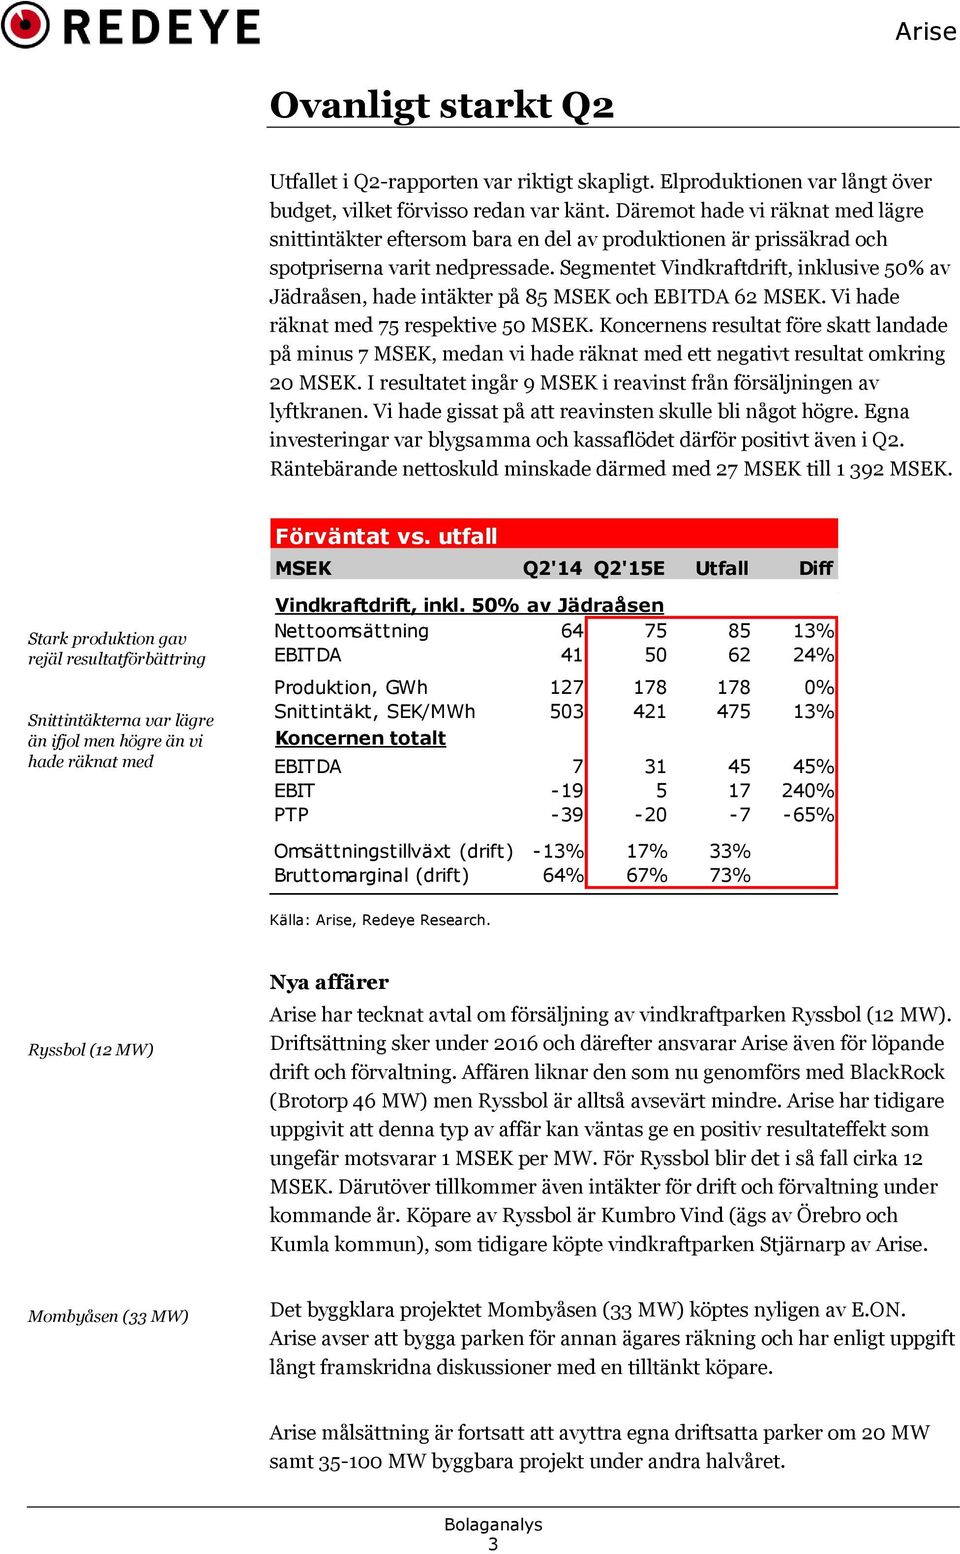 Segmentet Vindkraftdrift, inklusive 50% av Jädraåsen, hade intäkter på 85 MSEK och EBITDA 62 MSEK. Vi hade räknat med 75 respektive 50 MSEK.